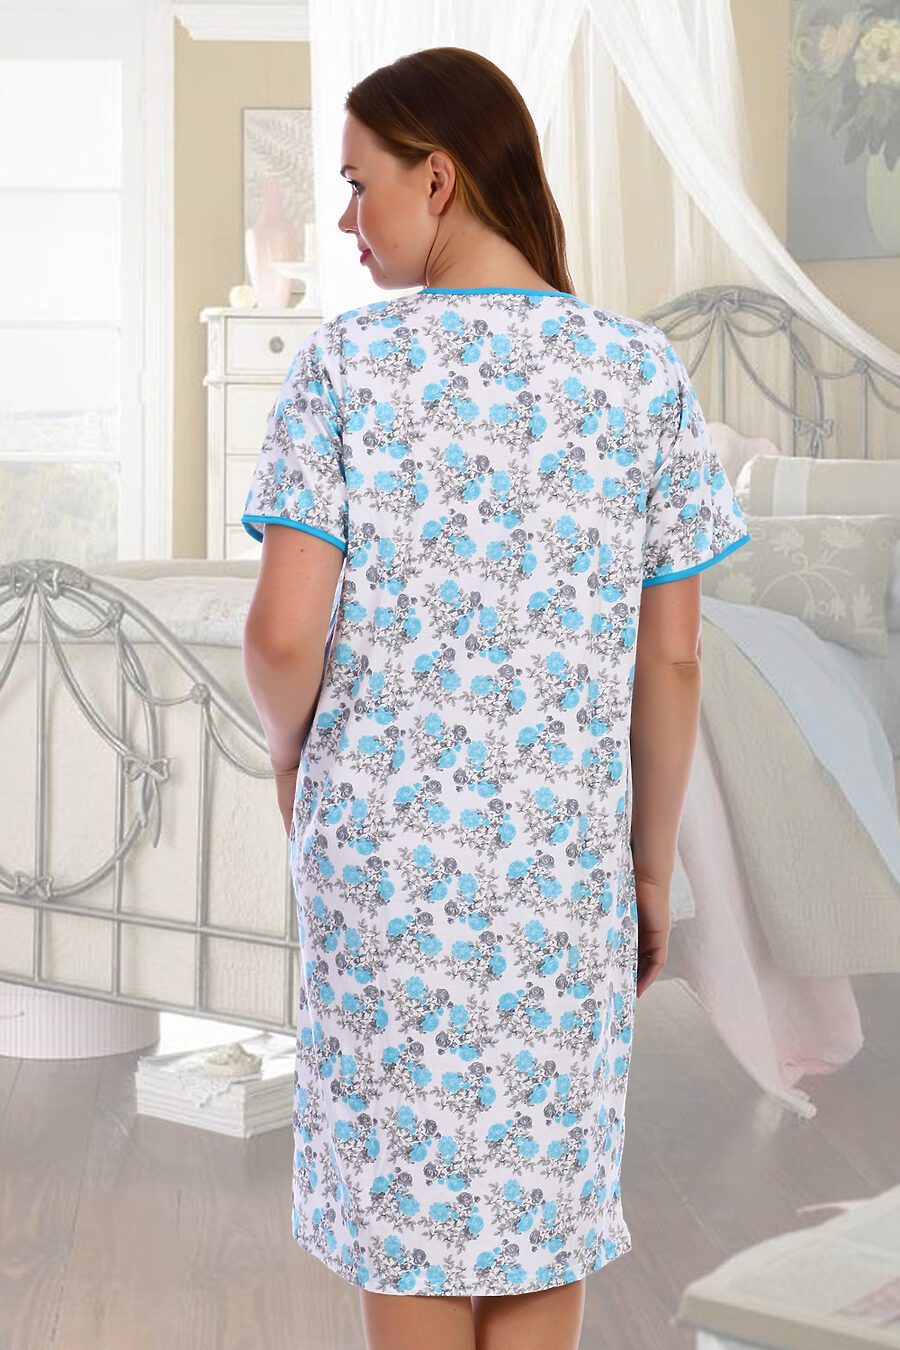 Сорочка Каре для женщин НАТАЛИ 684322 купить оптом от производителя. Совместная покупка женской одежды в OptMoyo